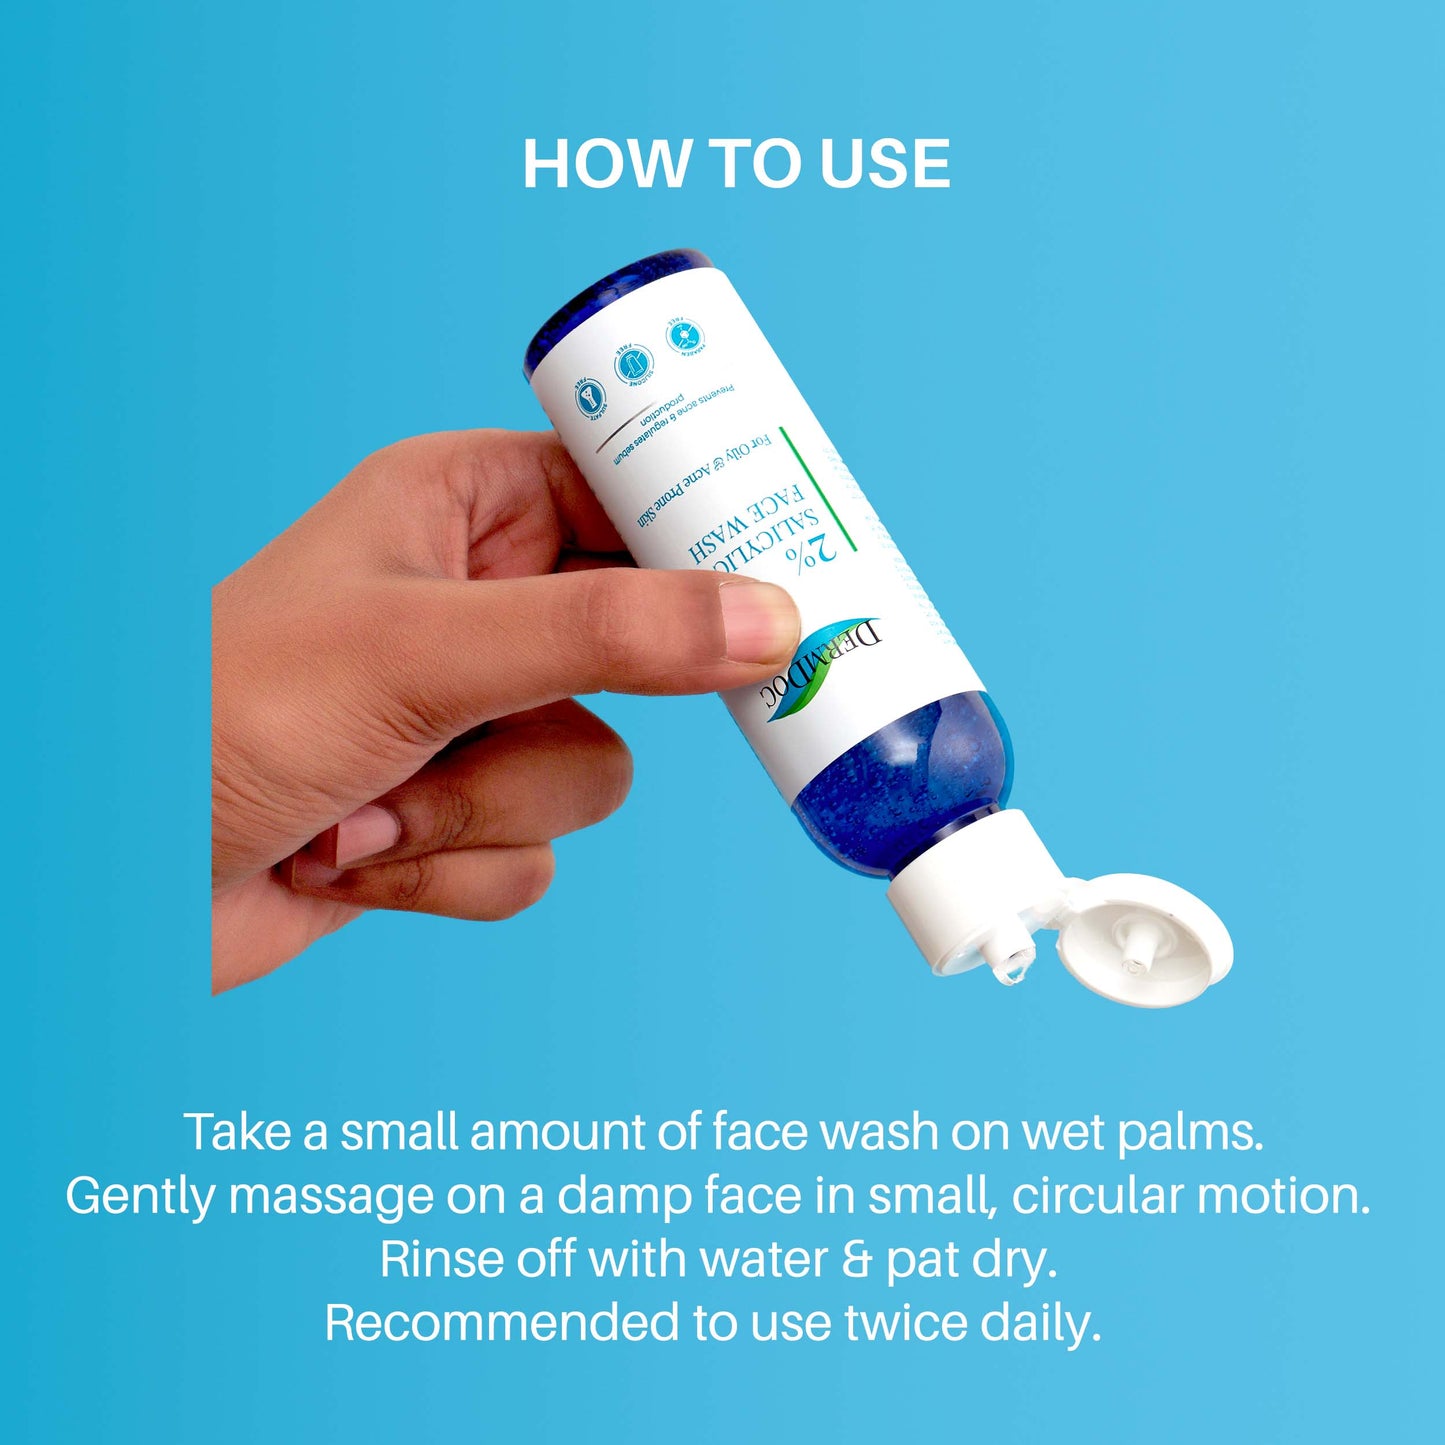 DermDoc 2% Salicylic Acid Face Wash For Clear & Acne Free Skin (120ml)